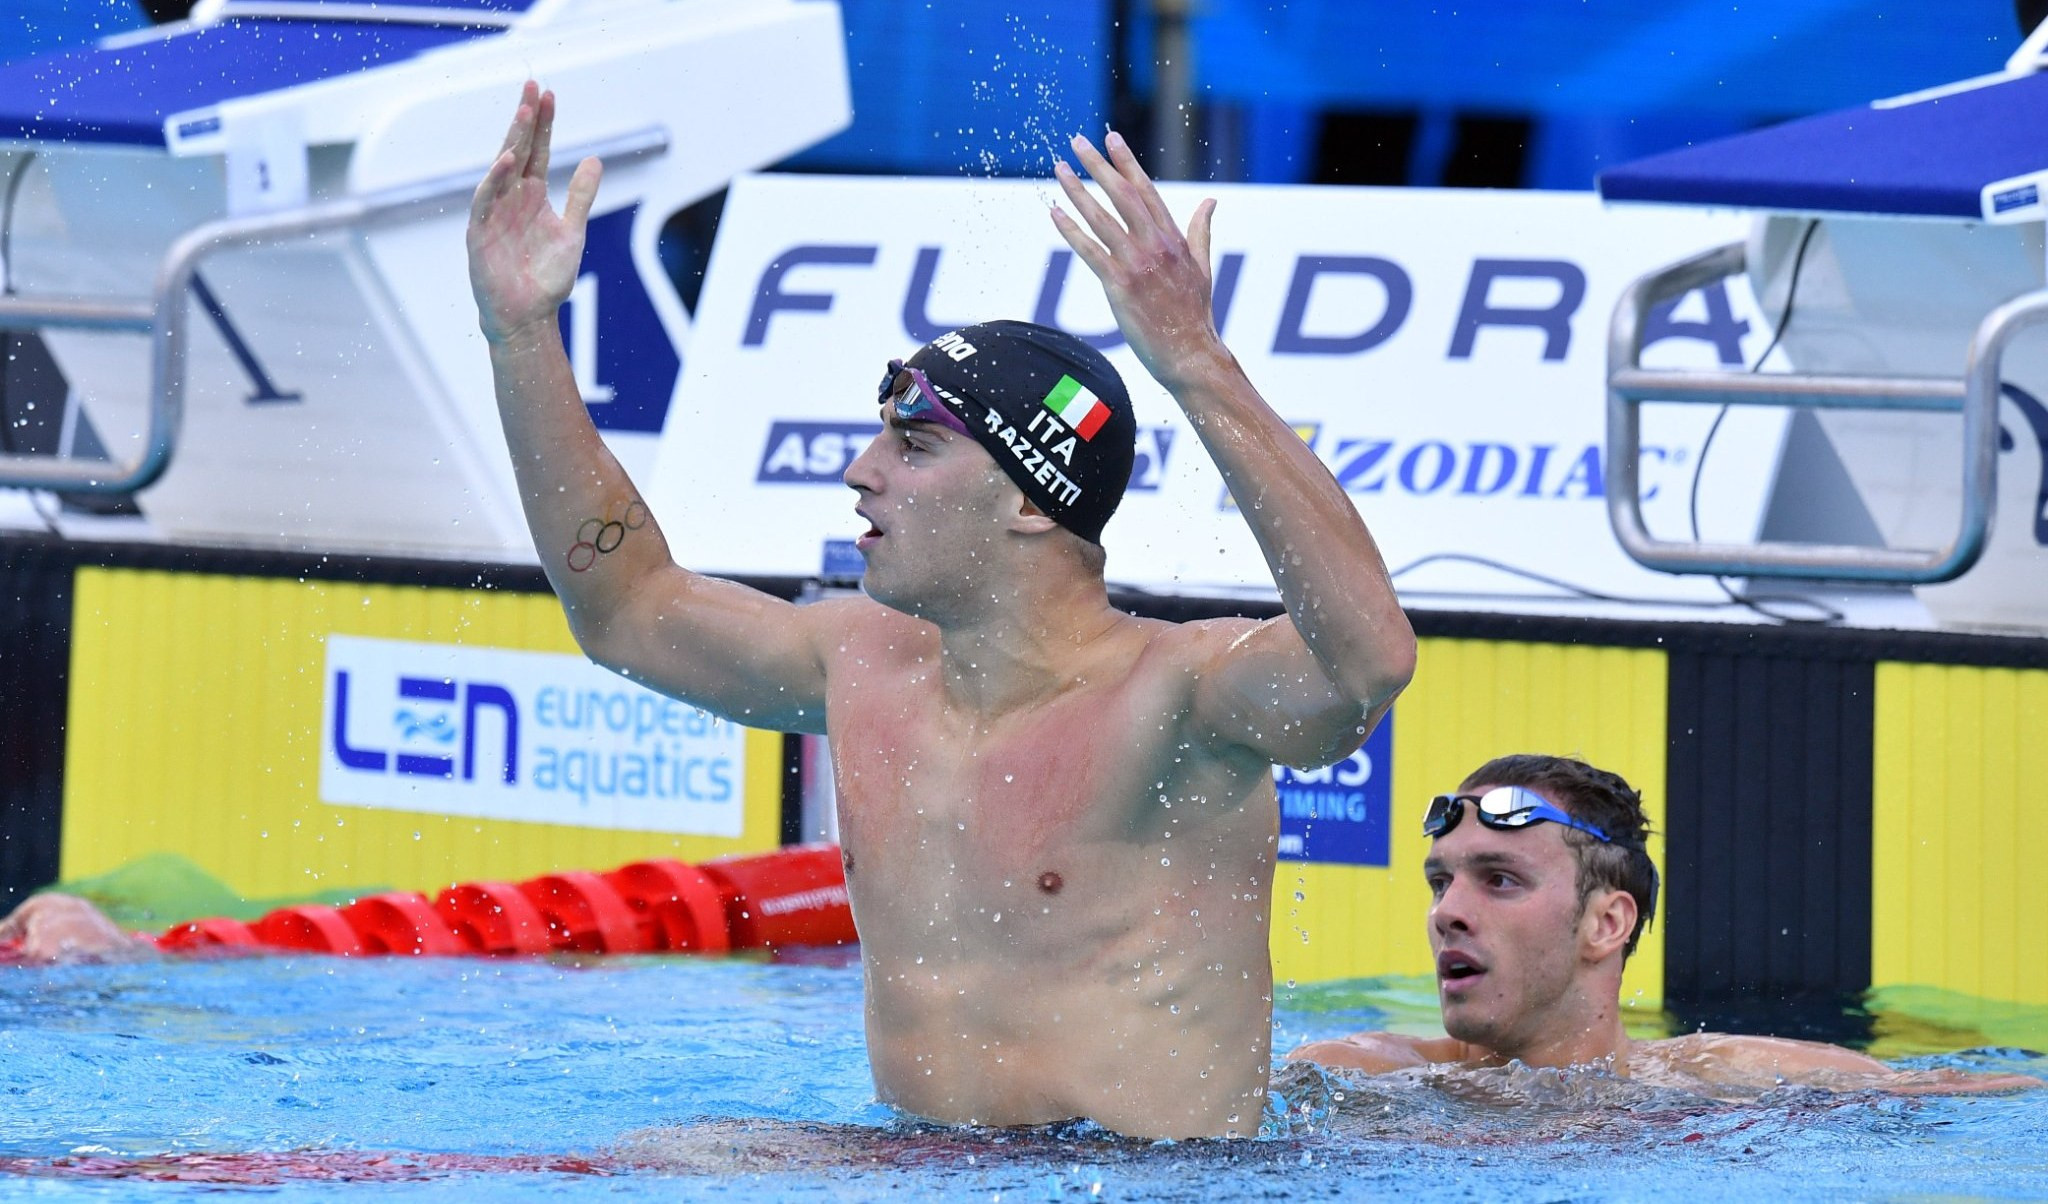 Nuoto, il ligure Razzetti campione d'Europa